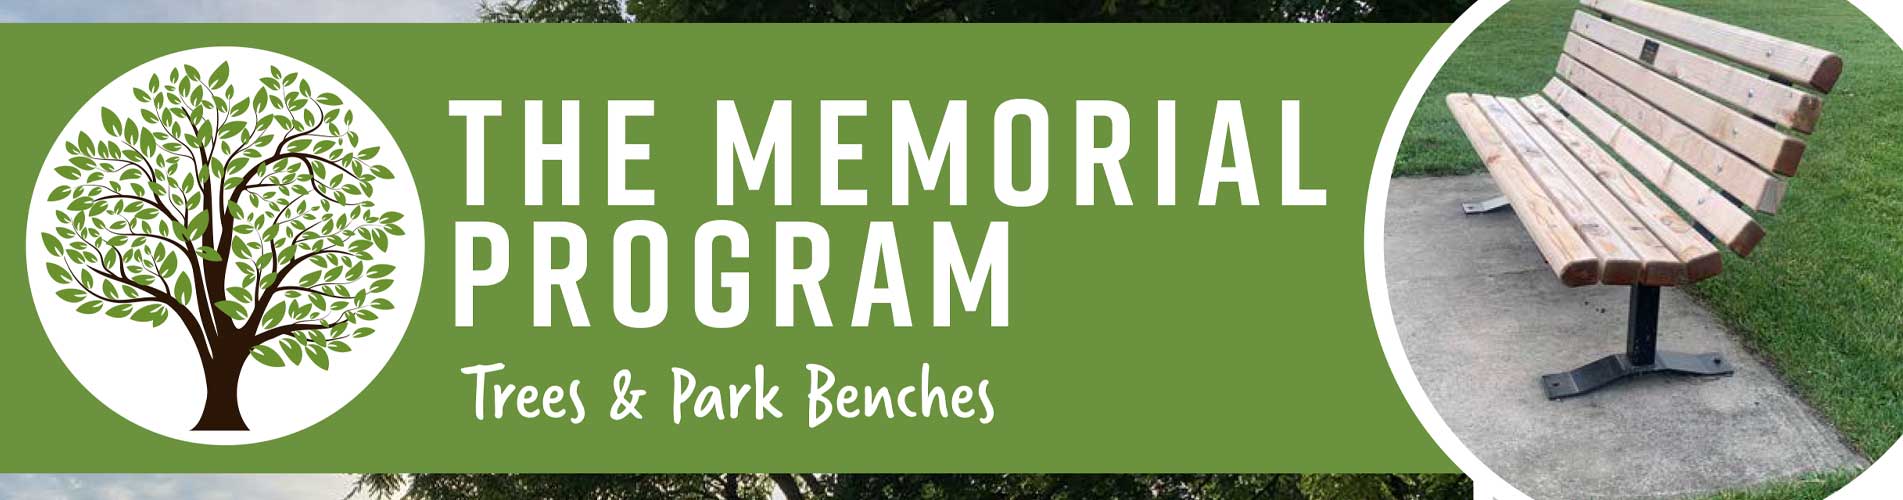 Memorial Program